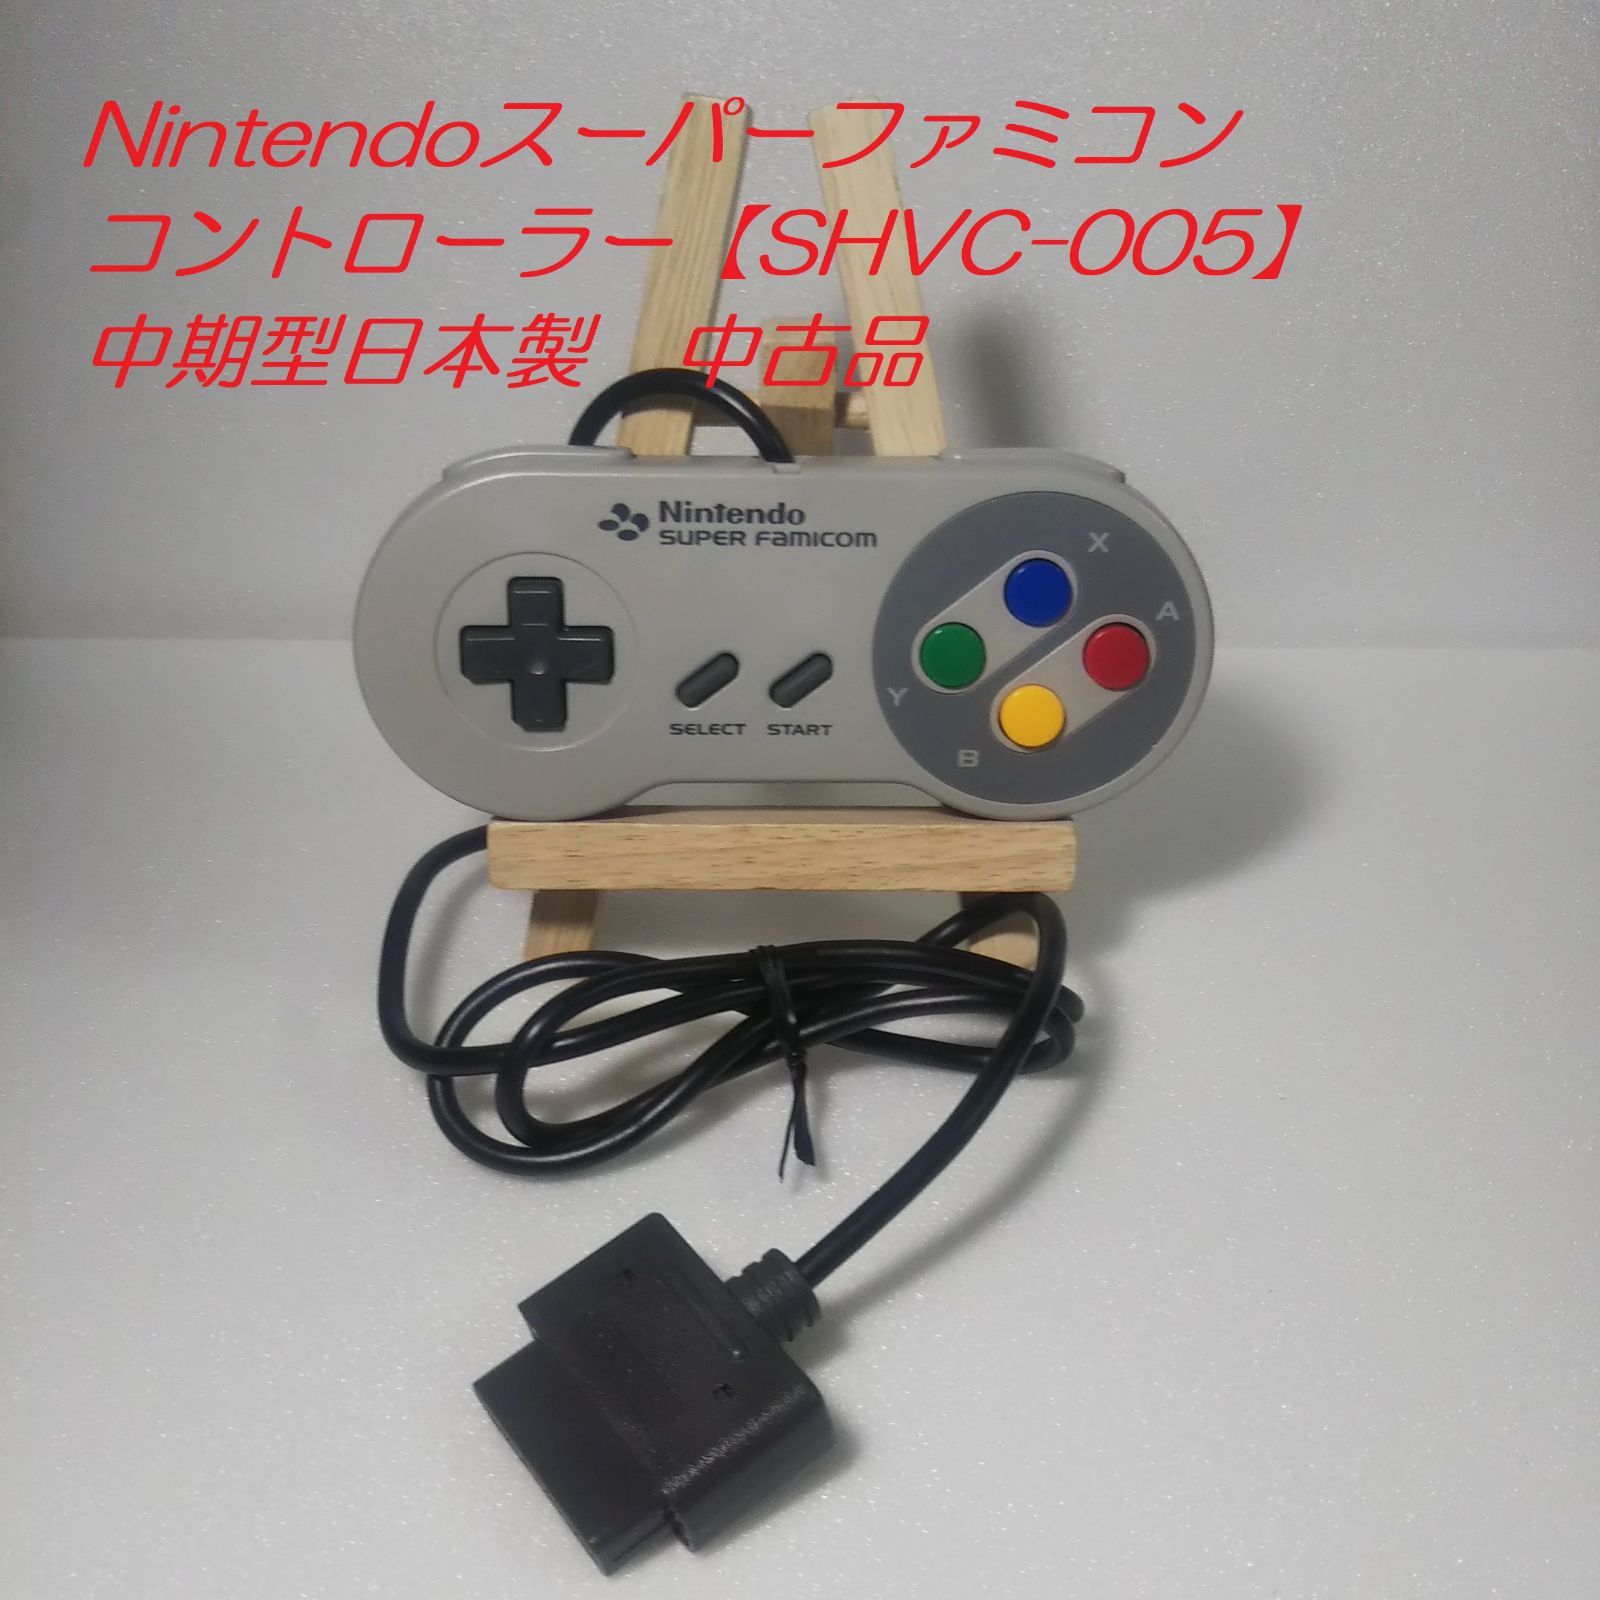 値下げしました】スーパーファミコンコントローラー Nintendo【SHVC 